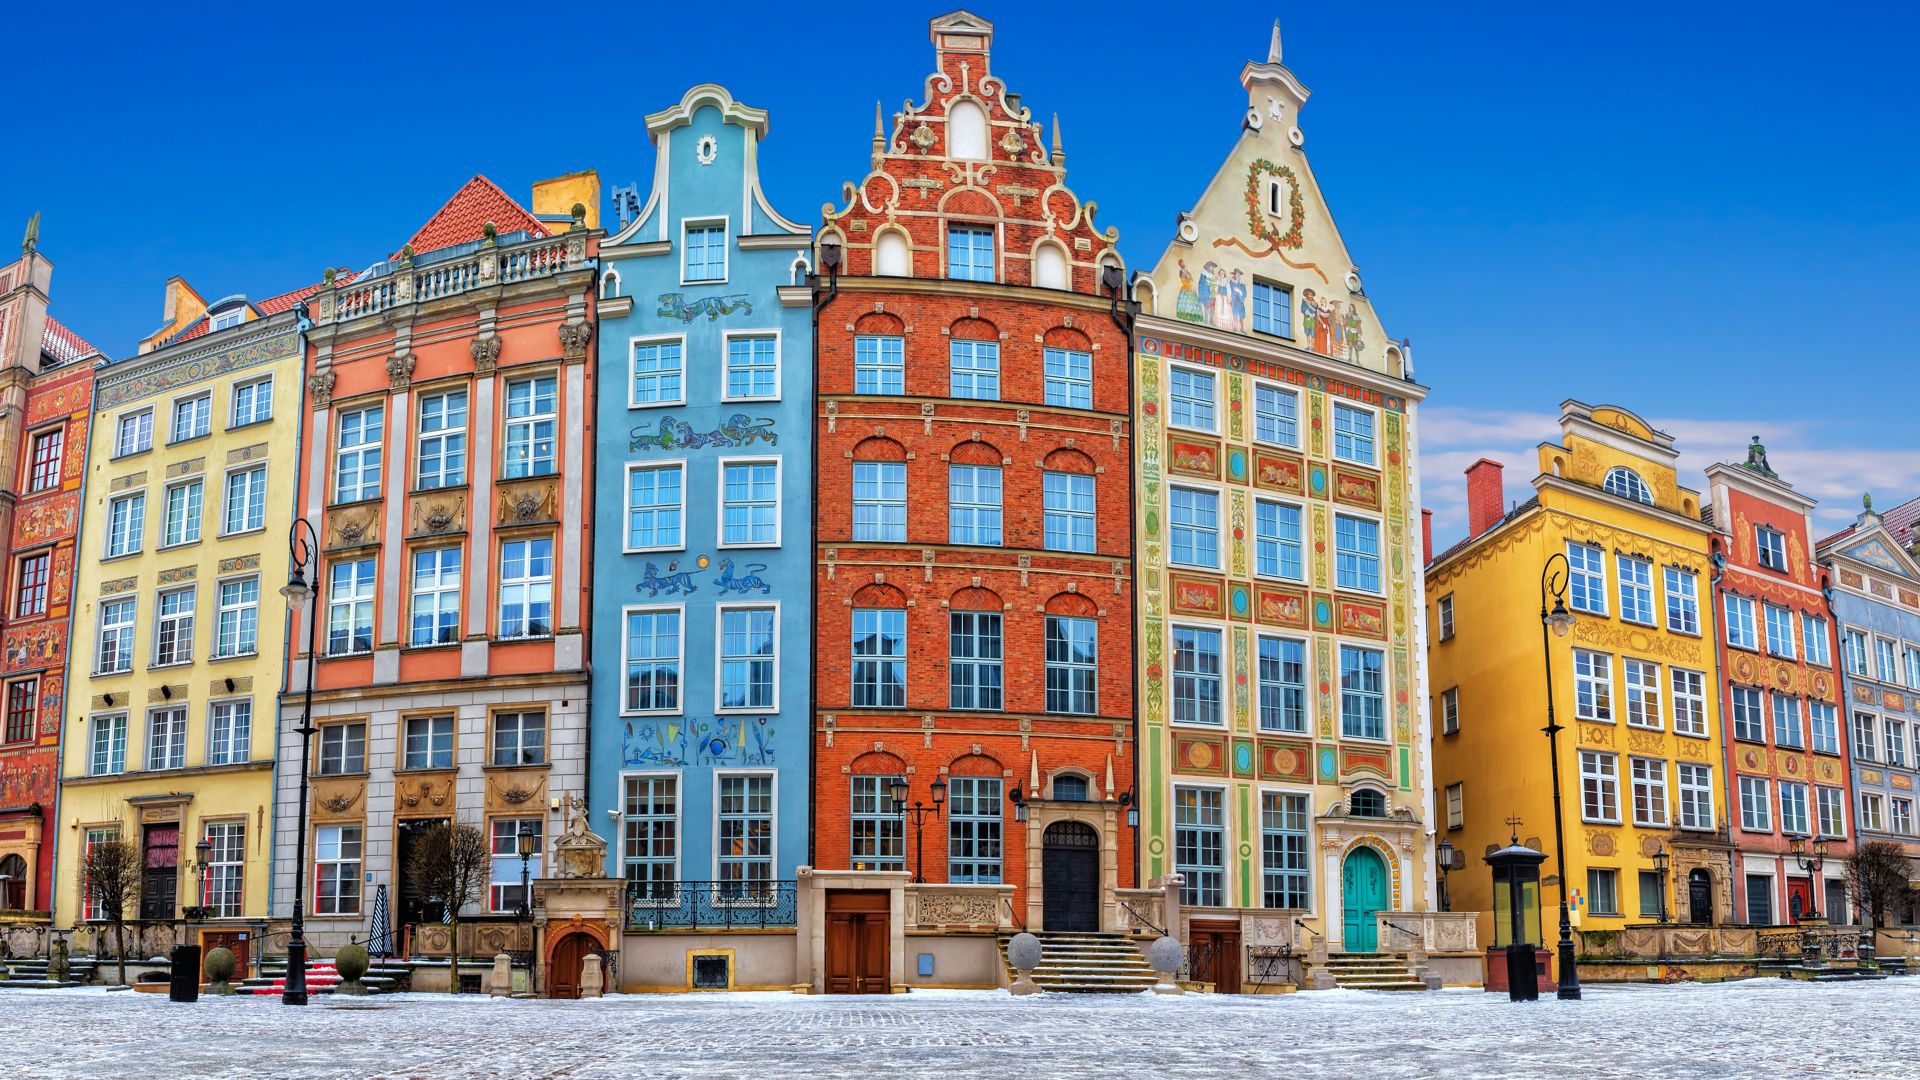 Panorama de Gdansk, un famoso mercado polaco antiguo.